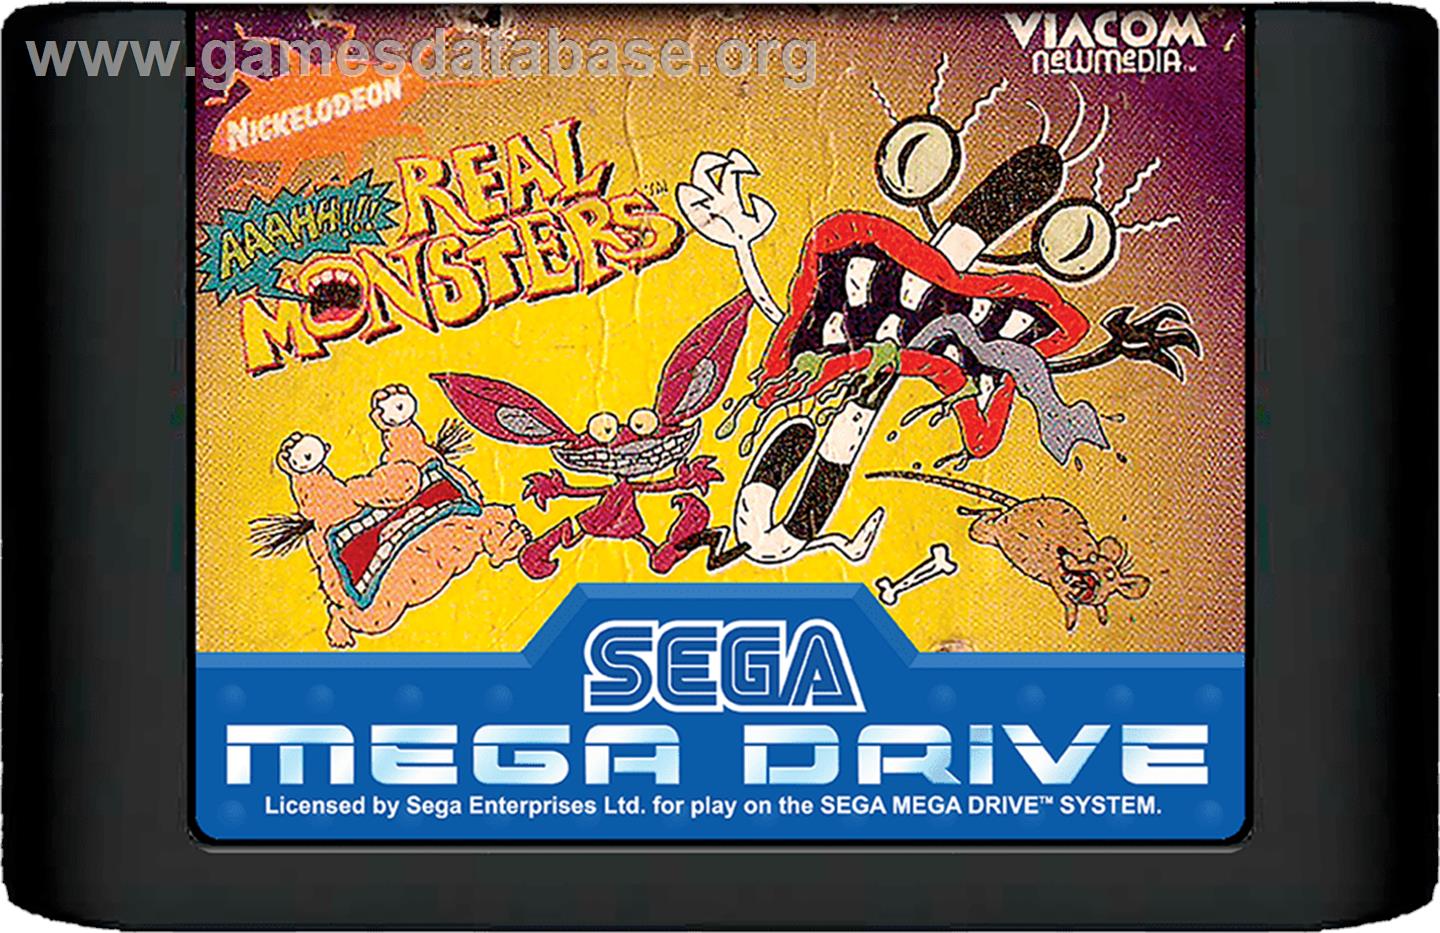 Nickelodeon: Aaahh!!! Real Monsters - Sega Genesis - Artwork - Cartridge